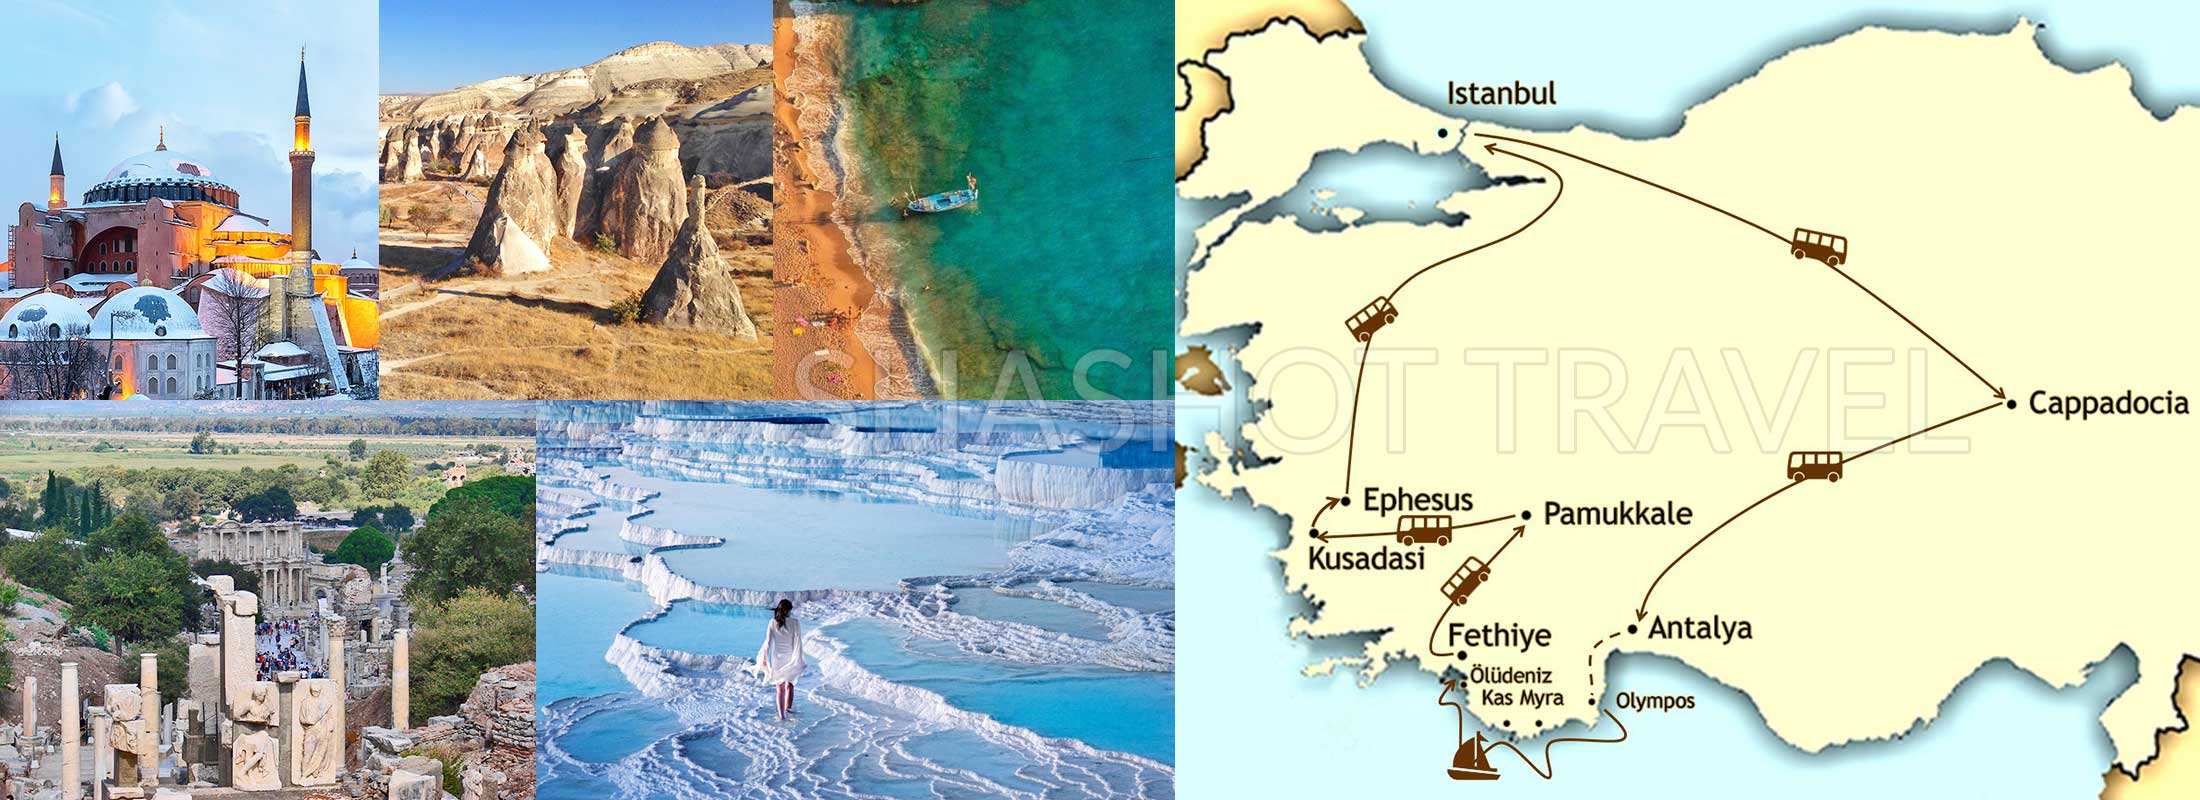 turkey-package-tours-12-days-istanbul-hagia-sophia-museum-blue-mosque-cappadocia-blue-cruise-olympos-fethiye-ephesus-pamukkale-map